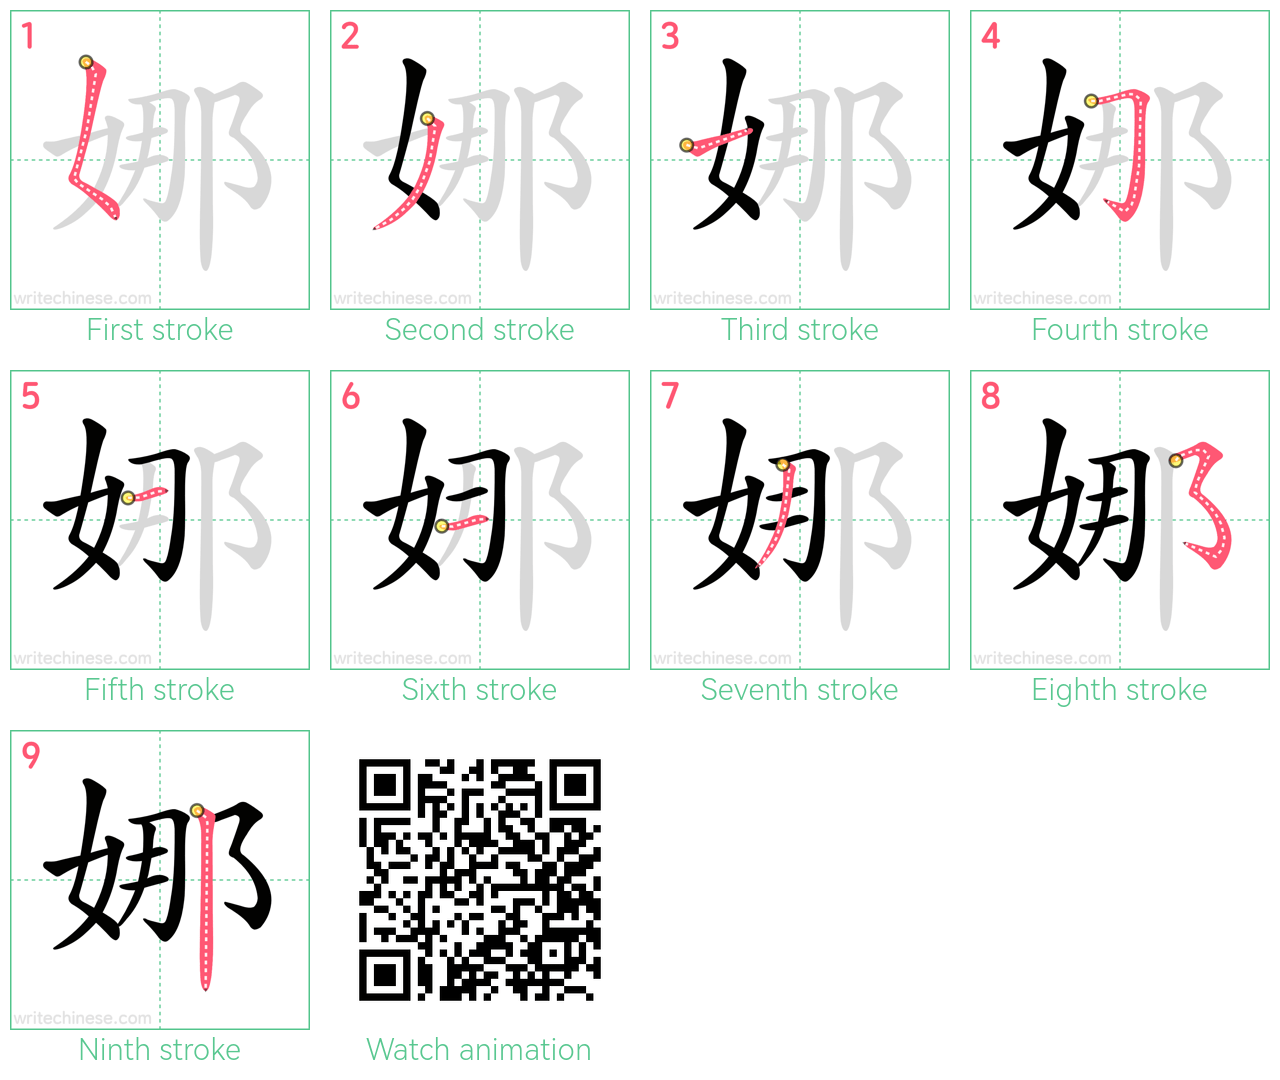 娜 step-by-step stroke order diagrams